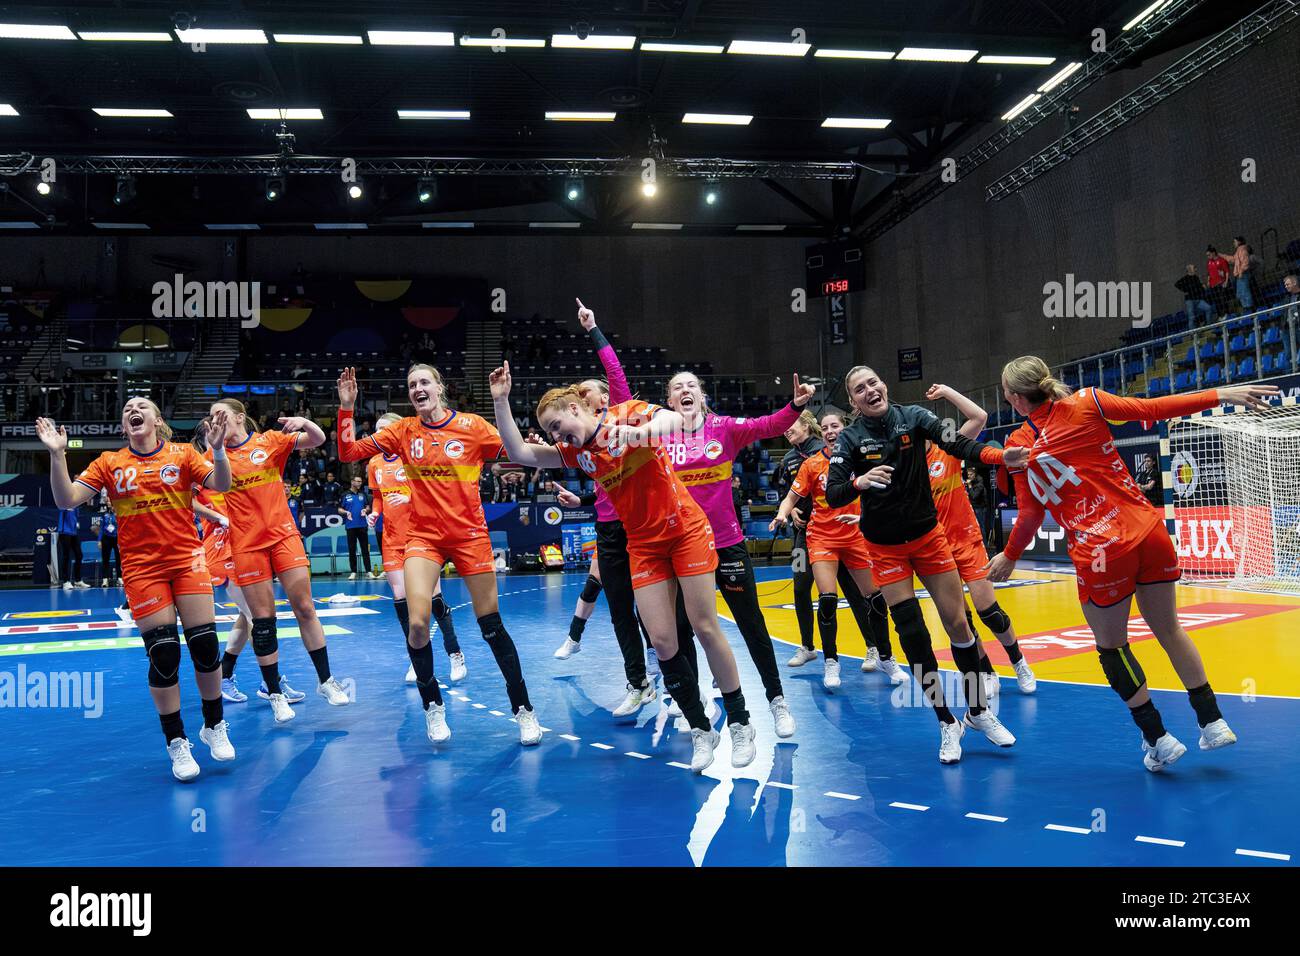 FREDERIKSHAVN - i Paesi Bassi festeggiano la sconfitta della Spagna durante il turno principale del gruppo IV della Coppa del mondo di pallamano nell'Arena Nord. ANP RONALD HOOGENDOORN Foto Stock